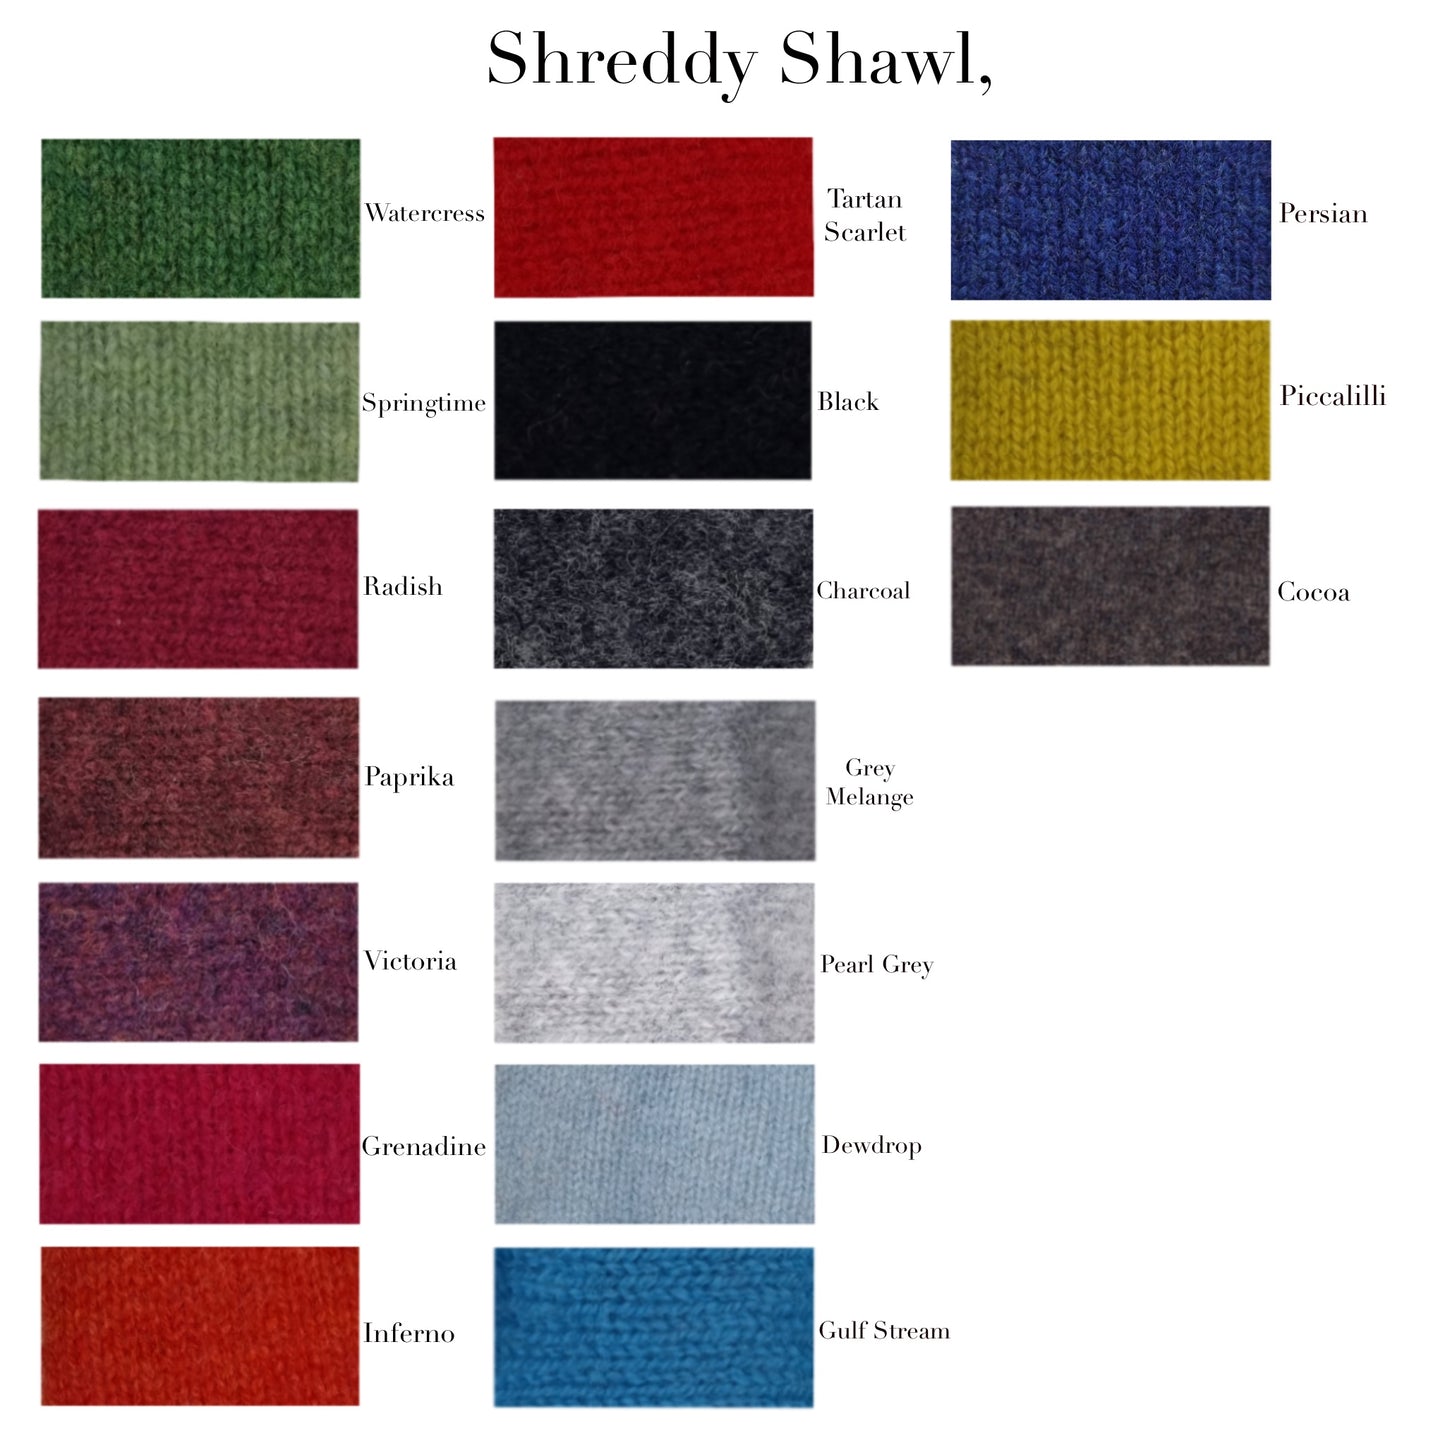 Shreddy Shawl